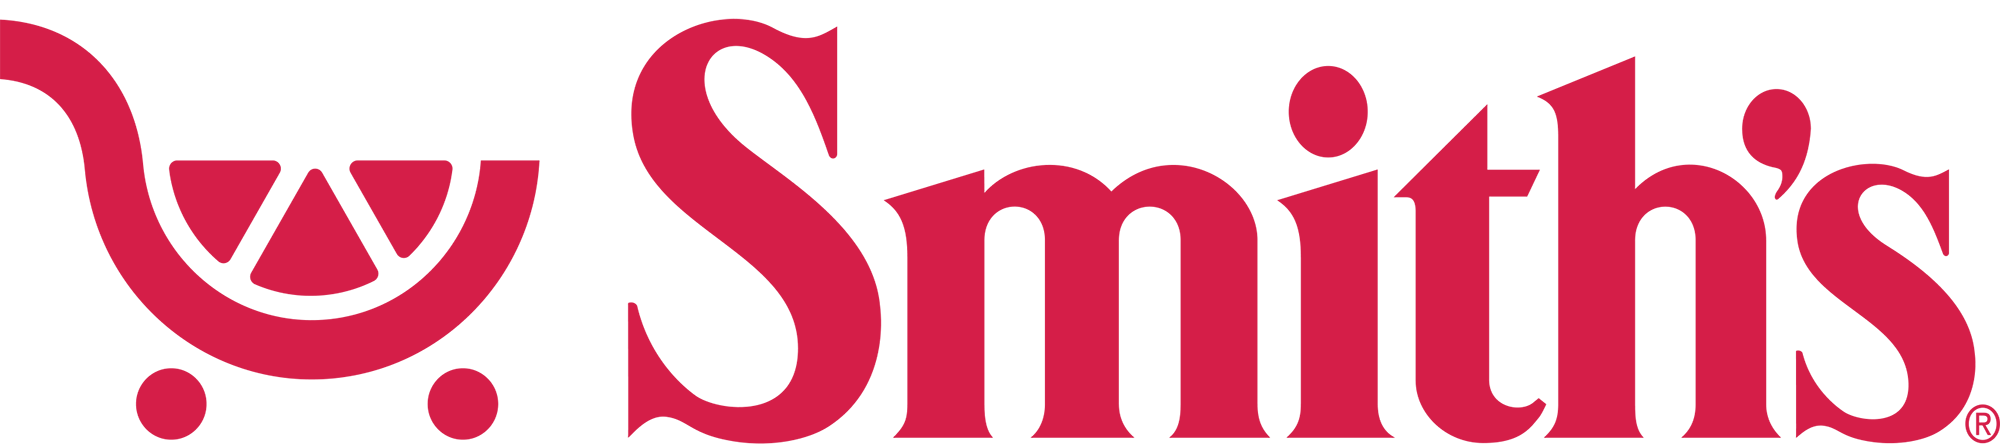 Smith's Logo